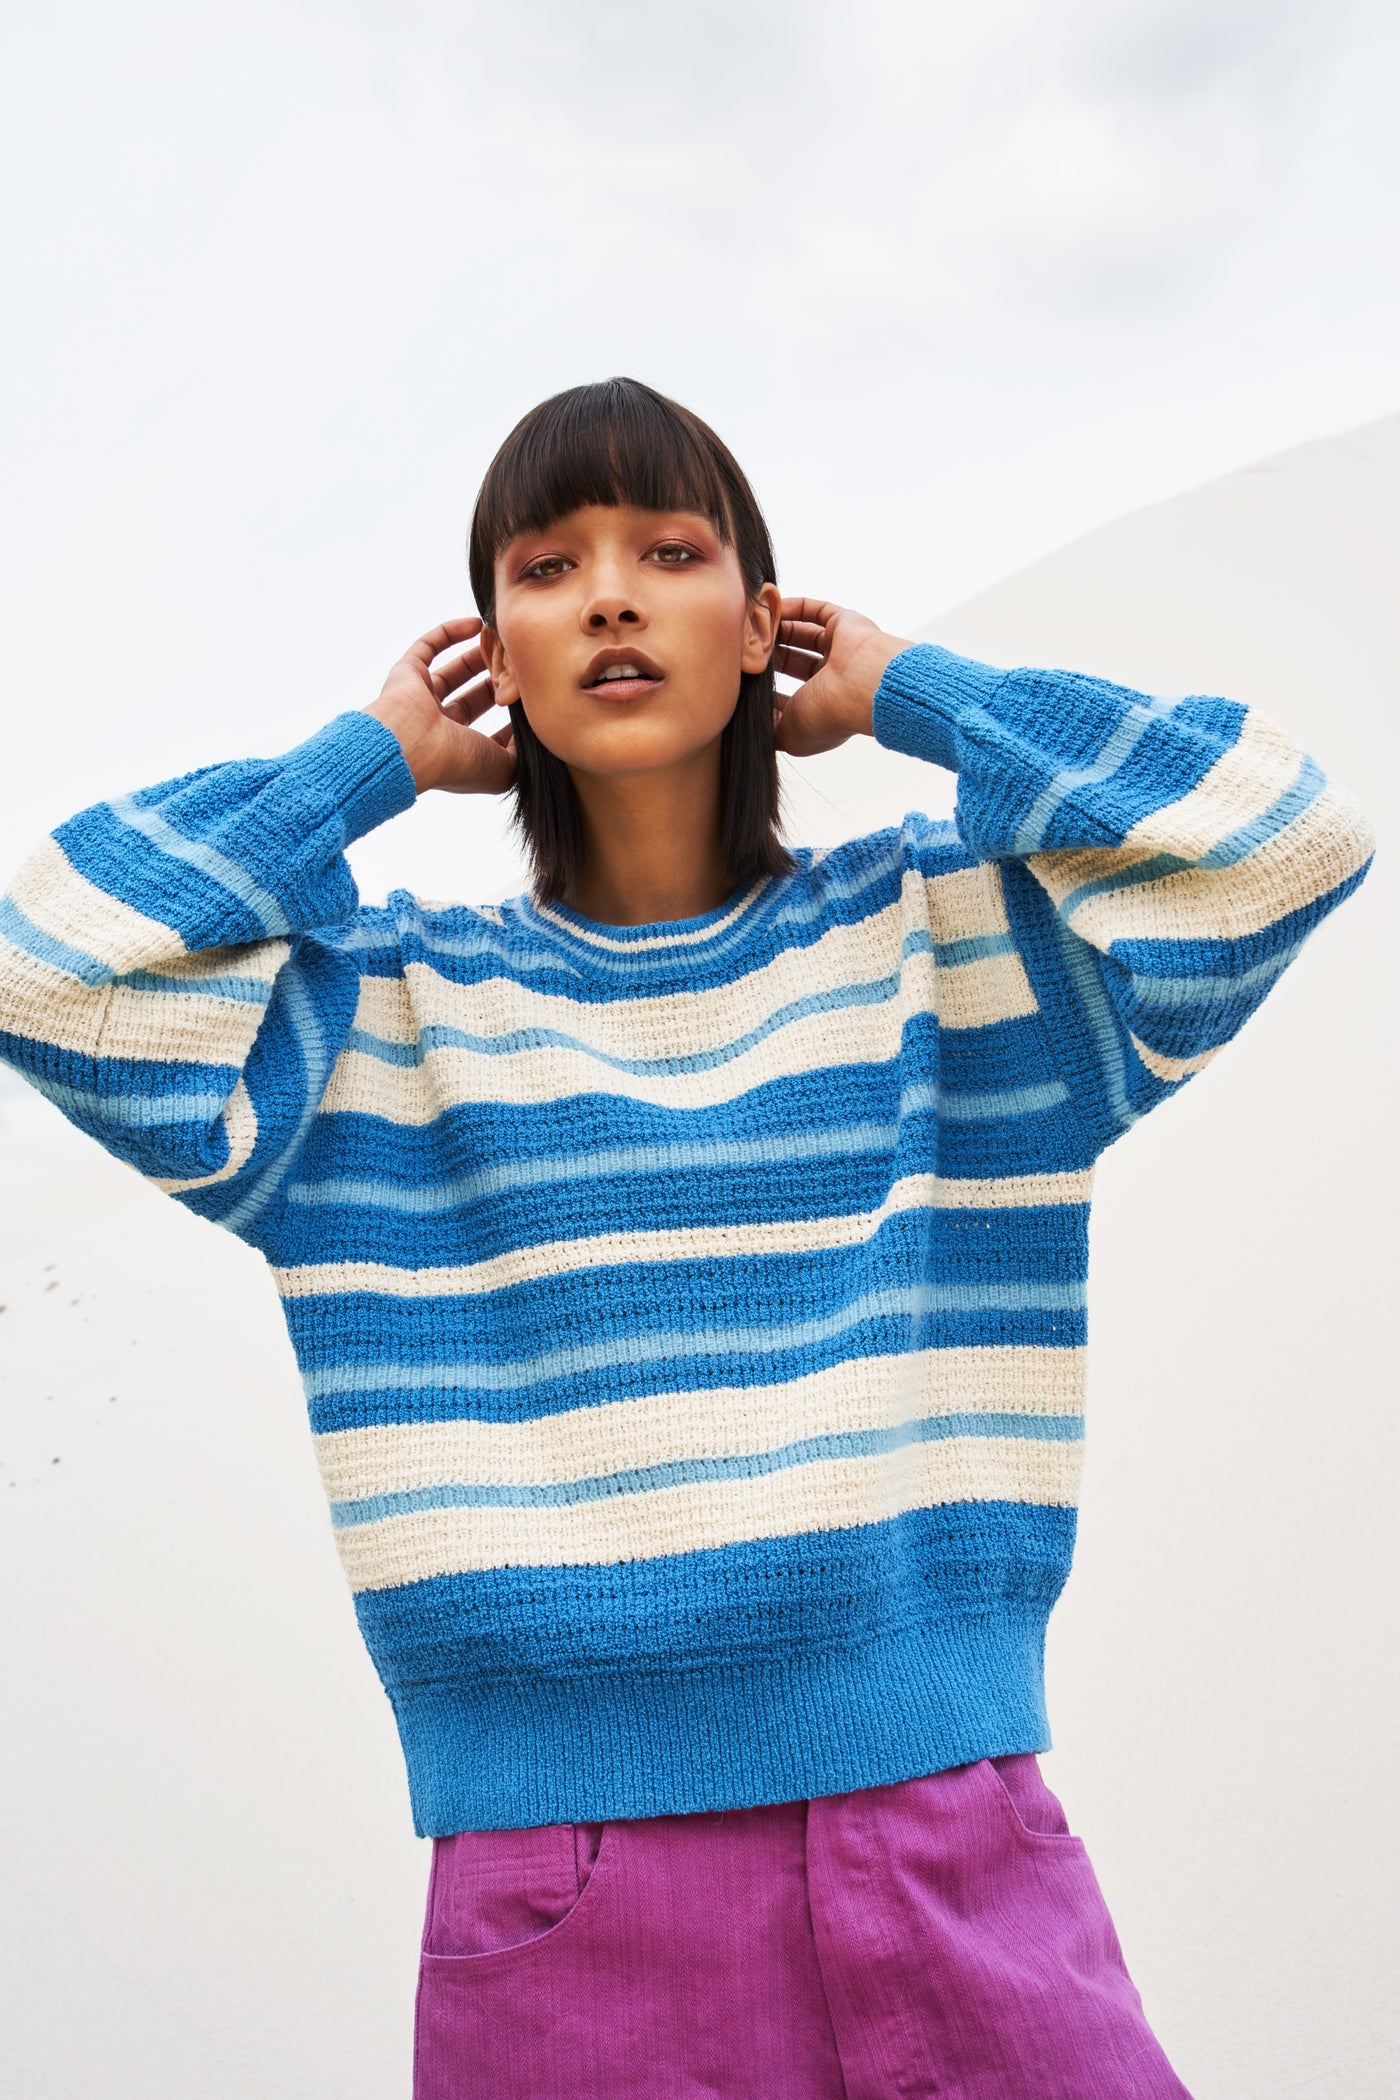 Wonder Sweater Azure